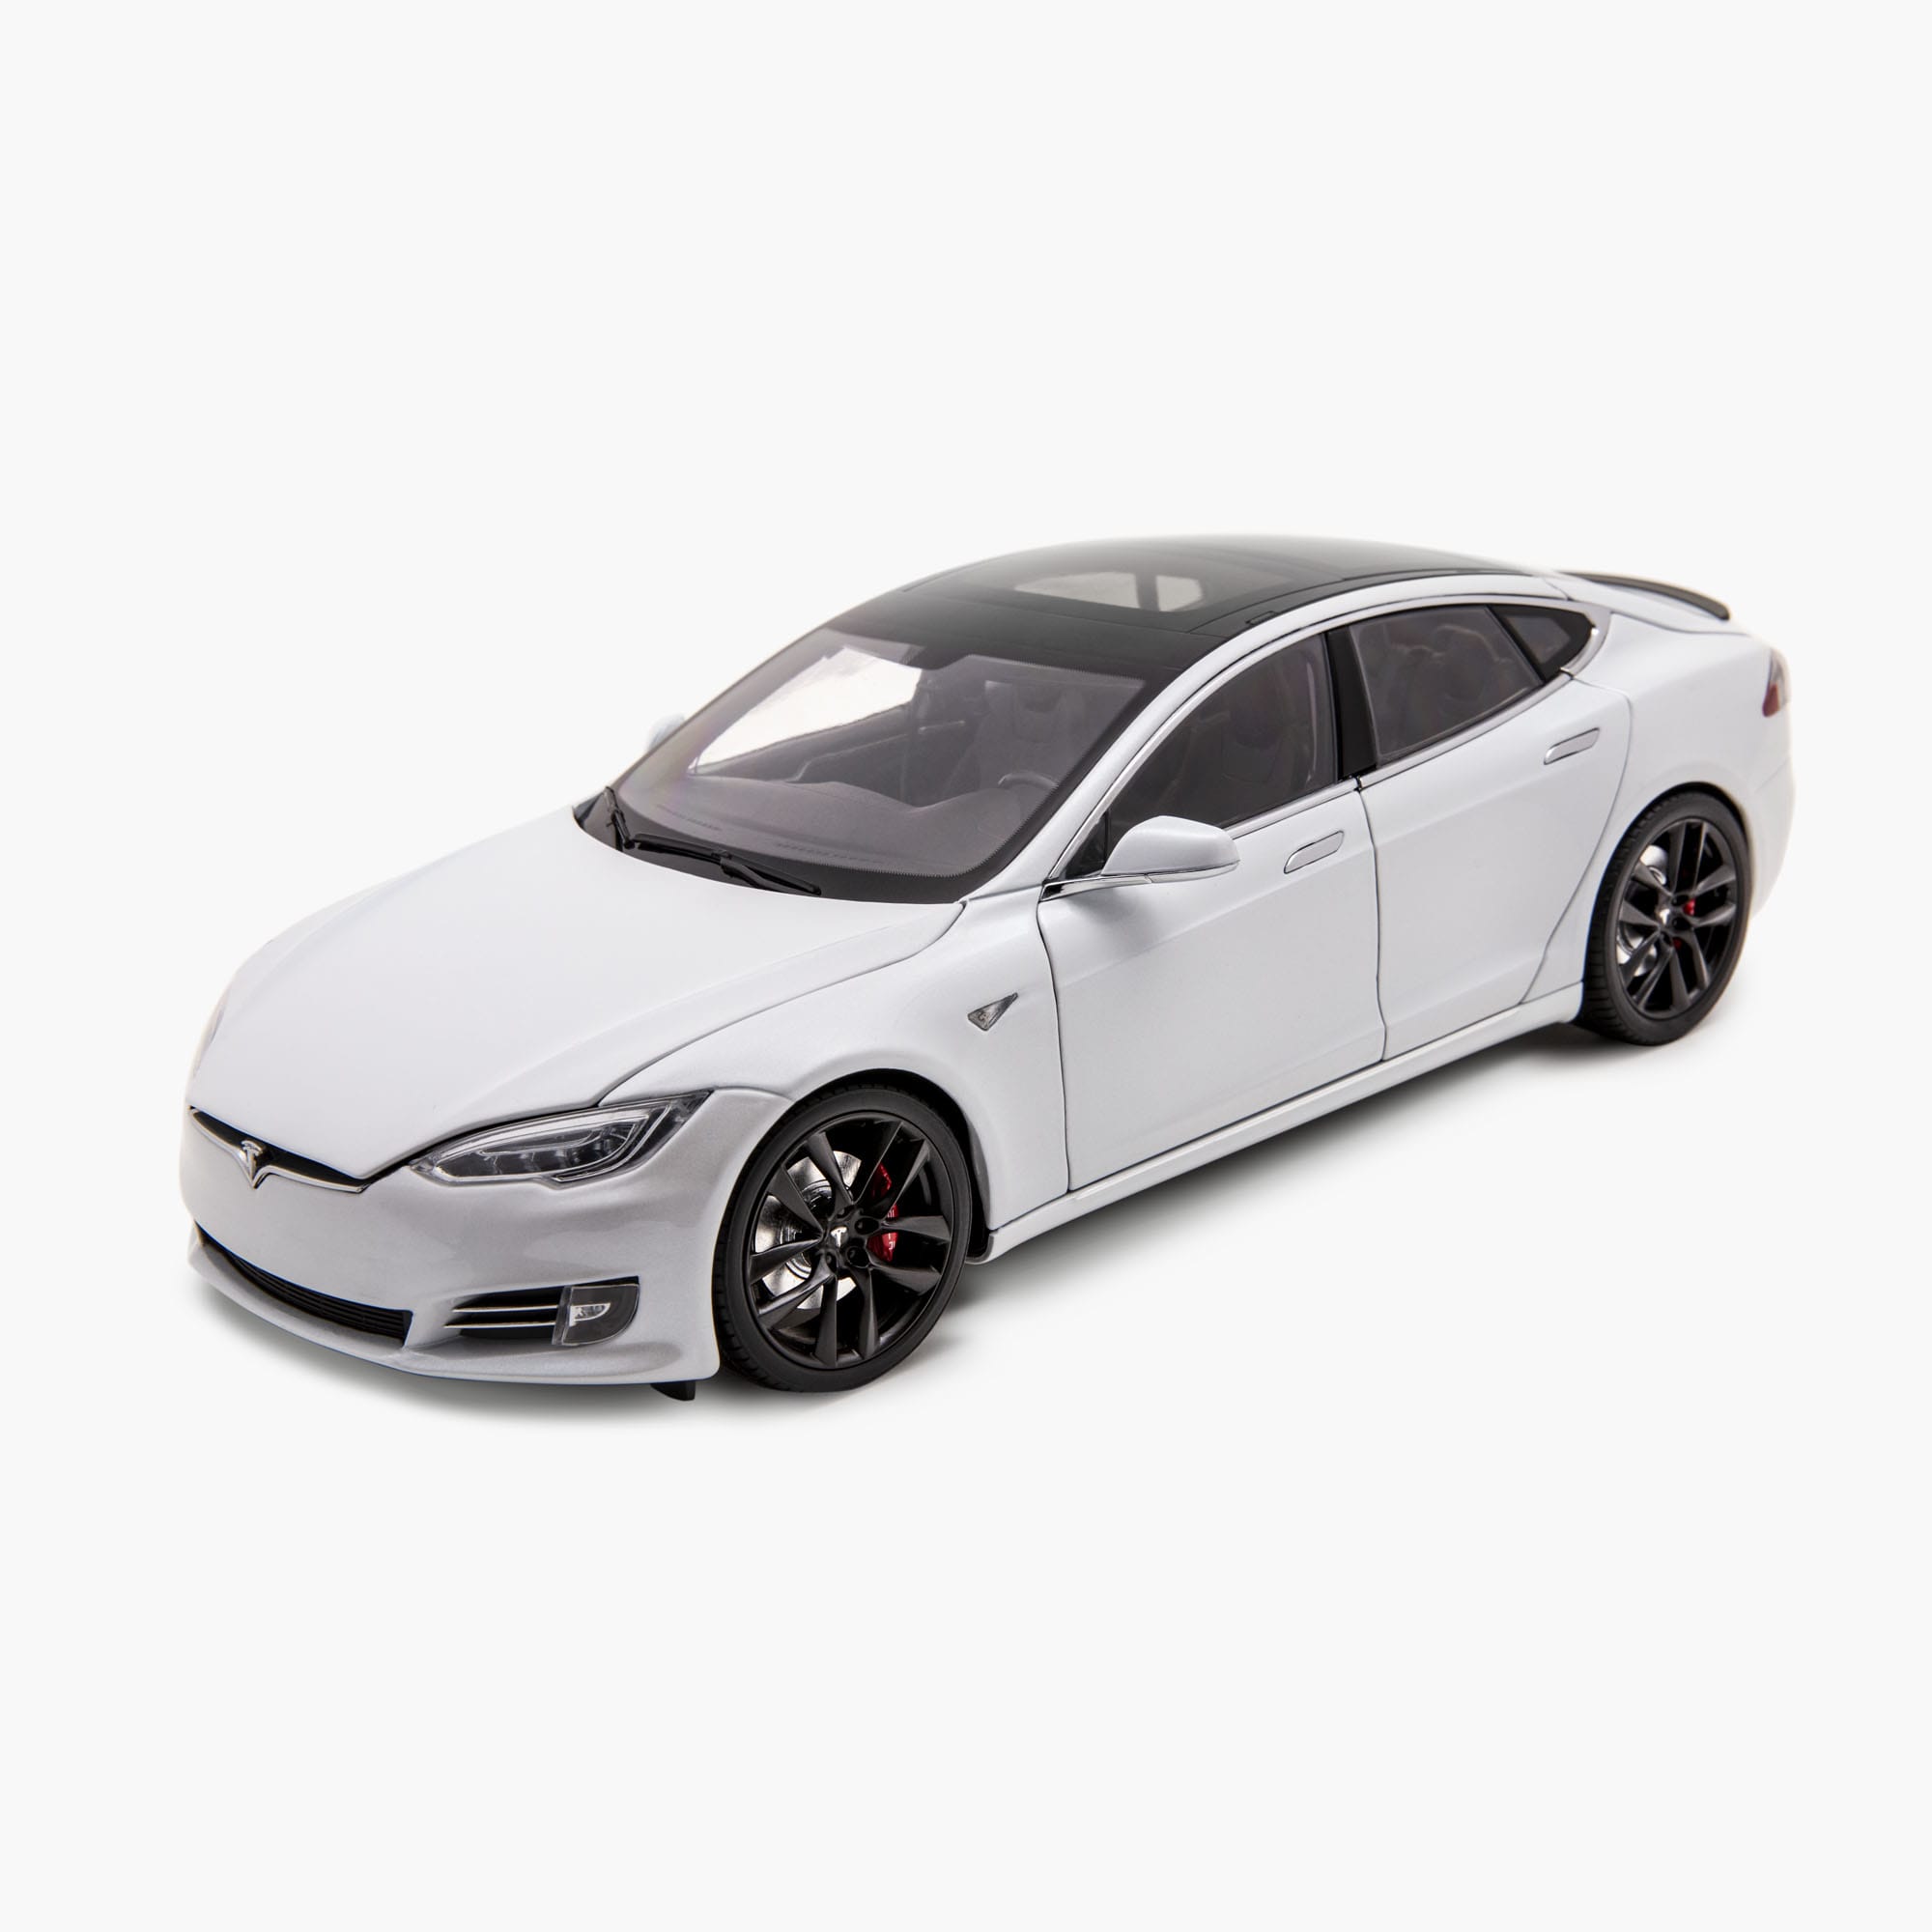 Model S in scala 1:18 realizzata in pressofusione